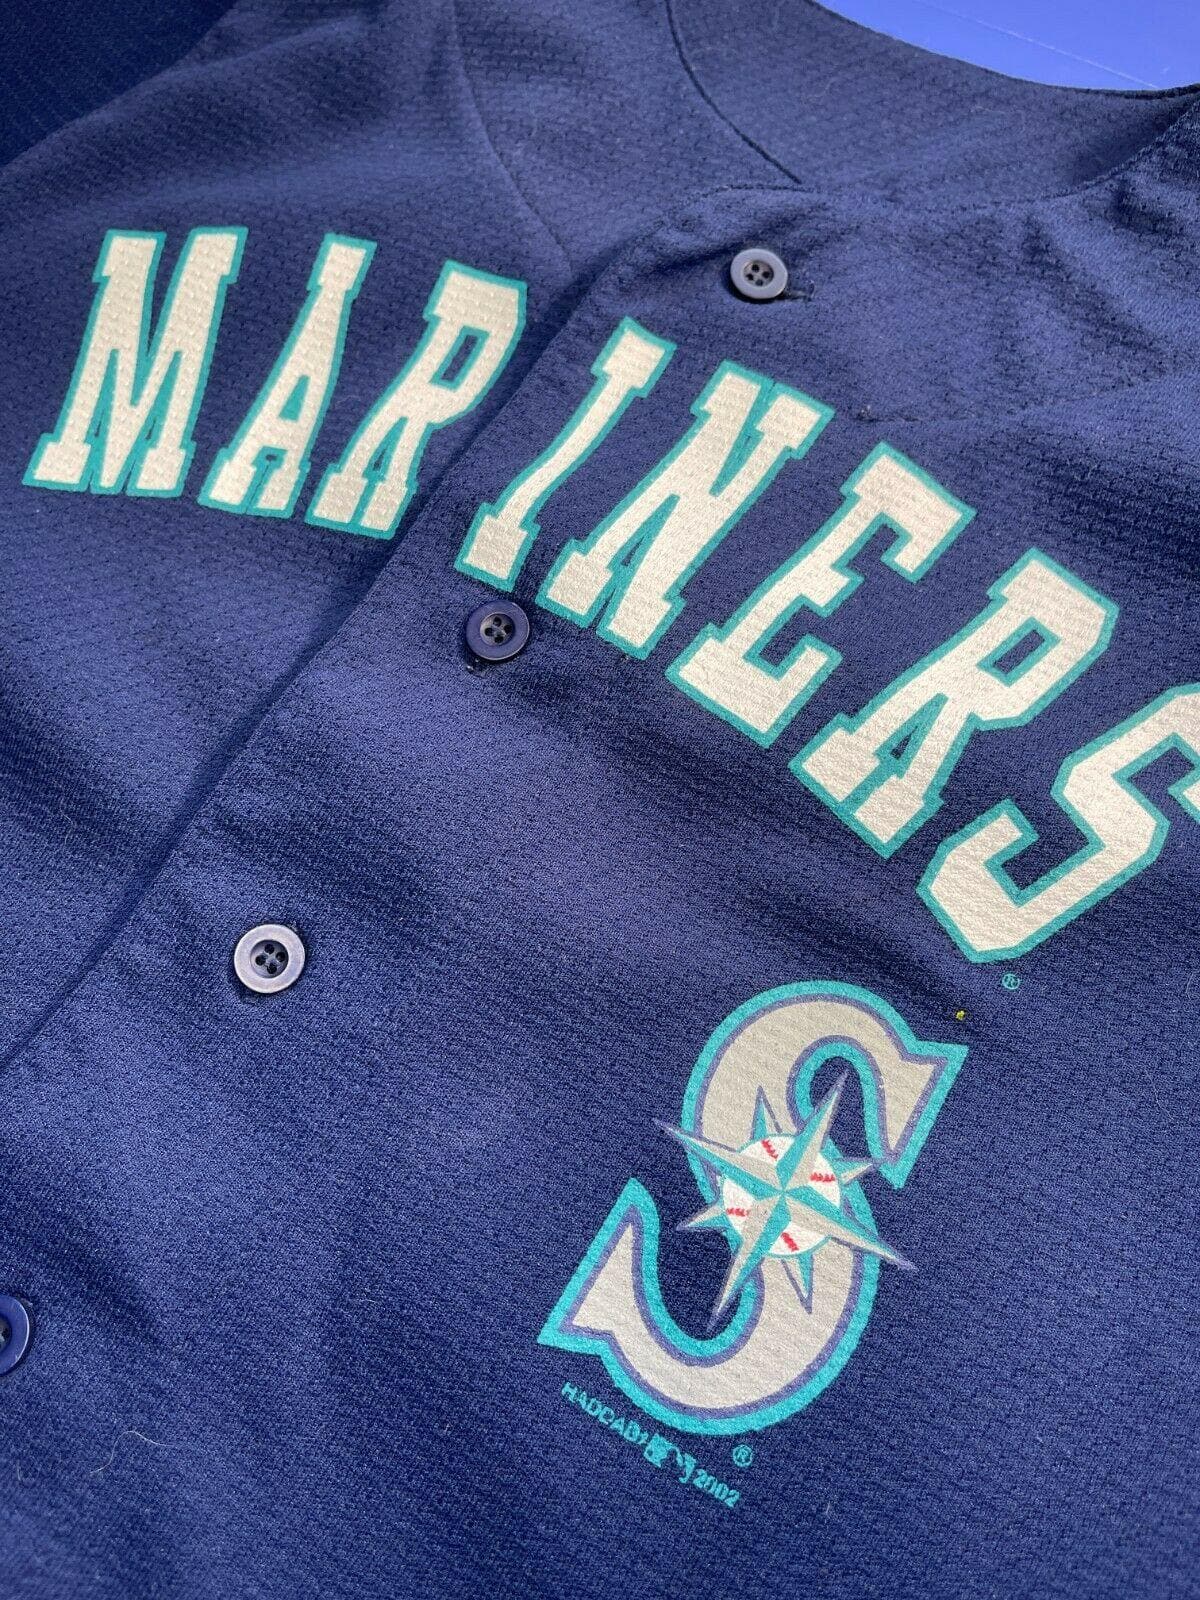 MLB Seattle Mariners Ichiro Suzuki #51 Blue Jersey Youth Medium 10-12